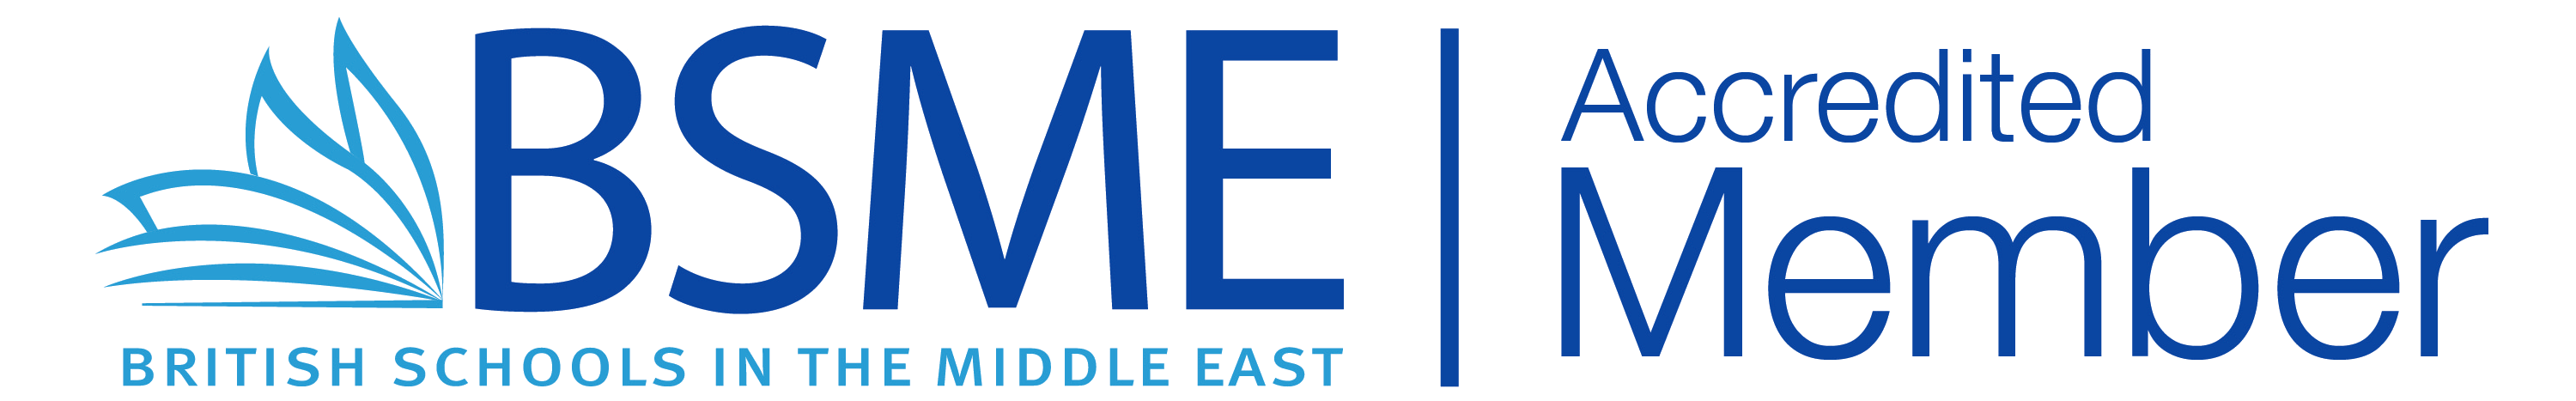 BSME logo